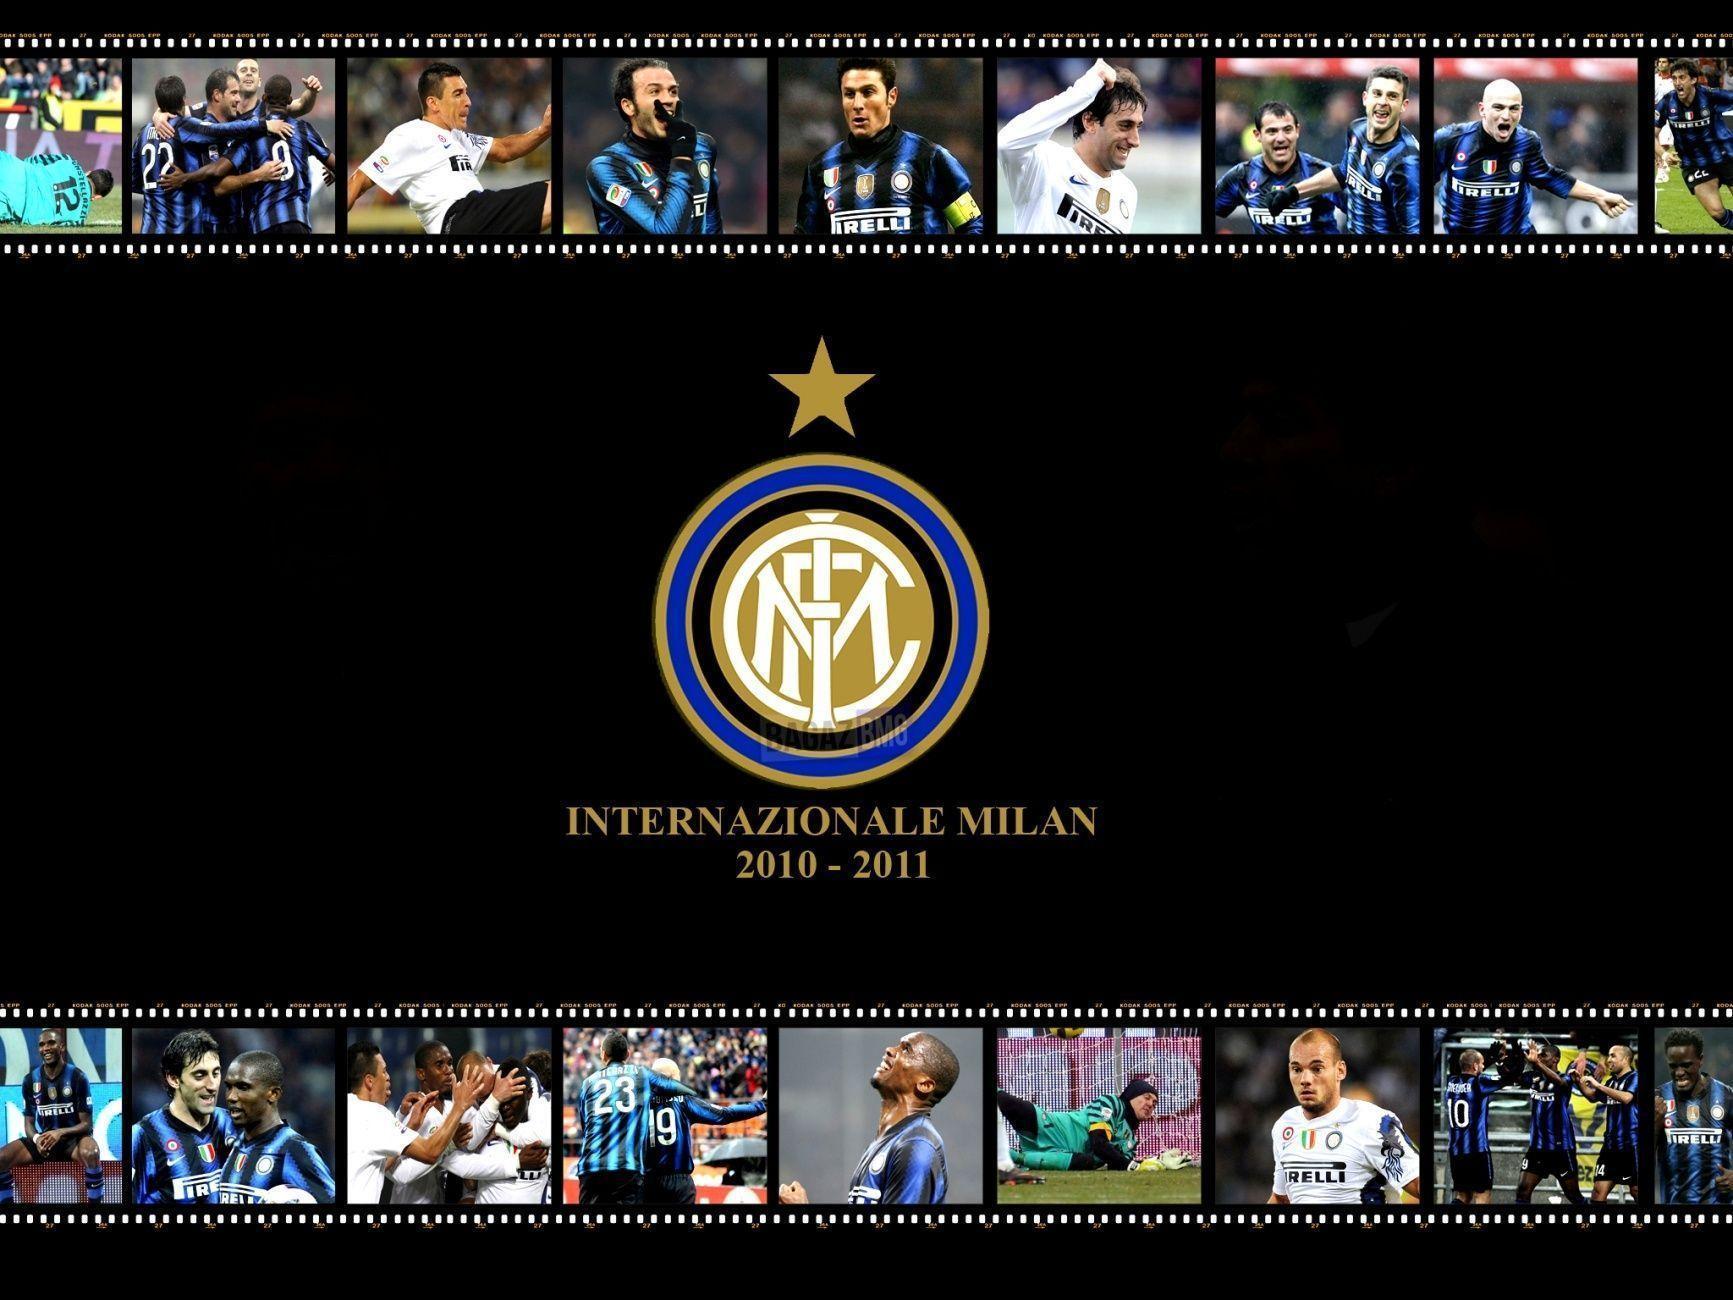 Inter Milan Wallpaper HD 178275 Image. soccerwallpics